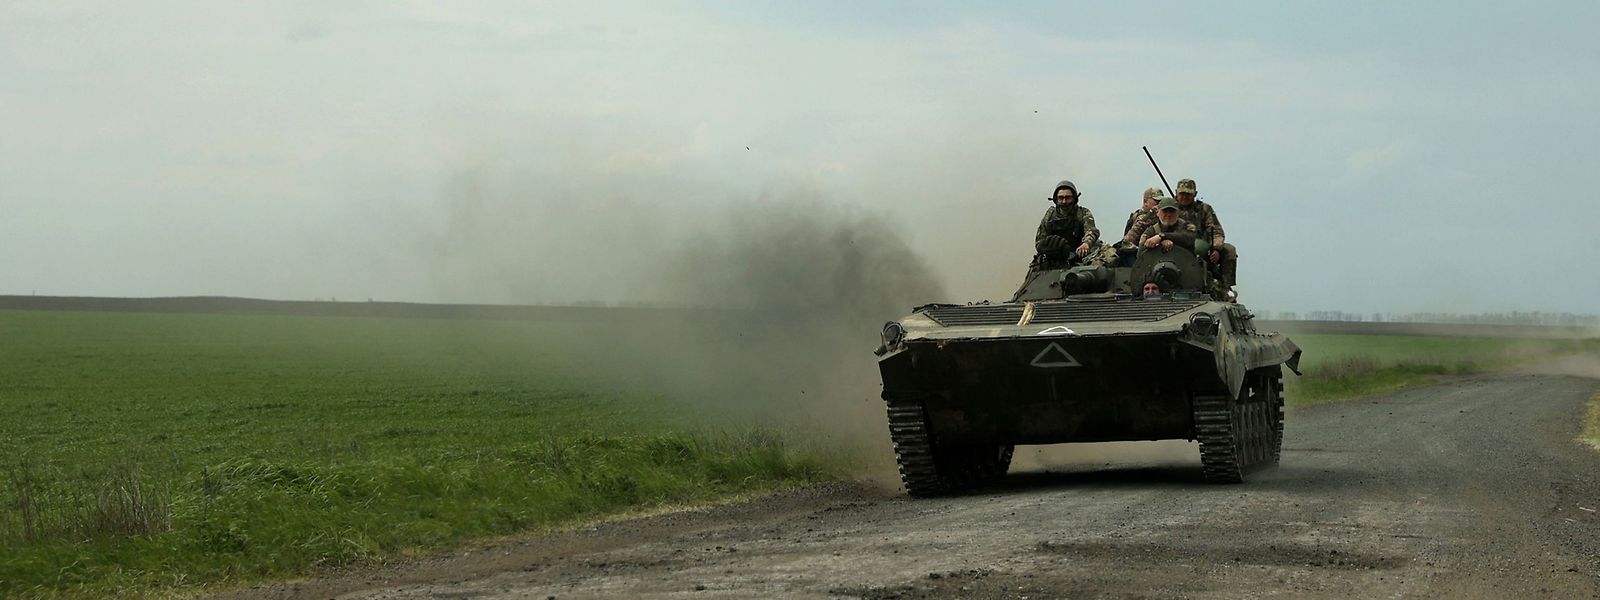 Ukrainische Soldaten sind in der Region um Charkiv unterwegs.